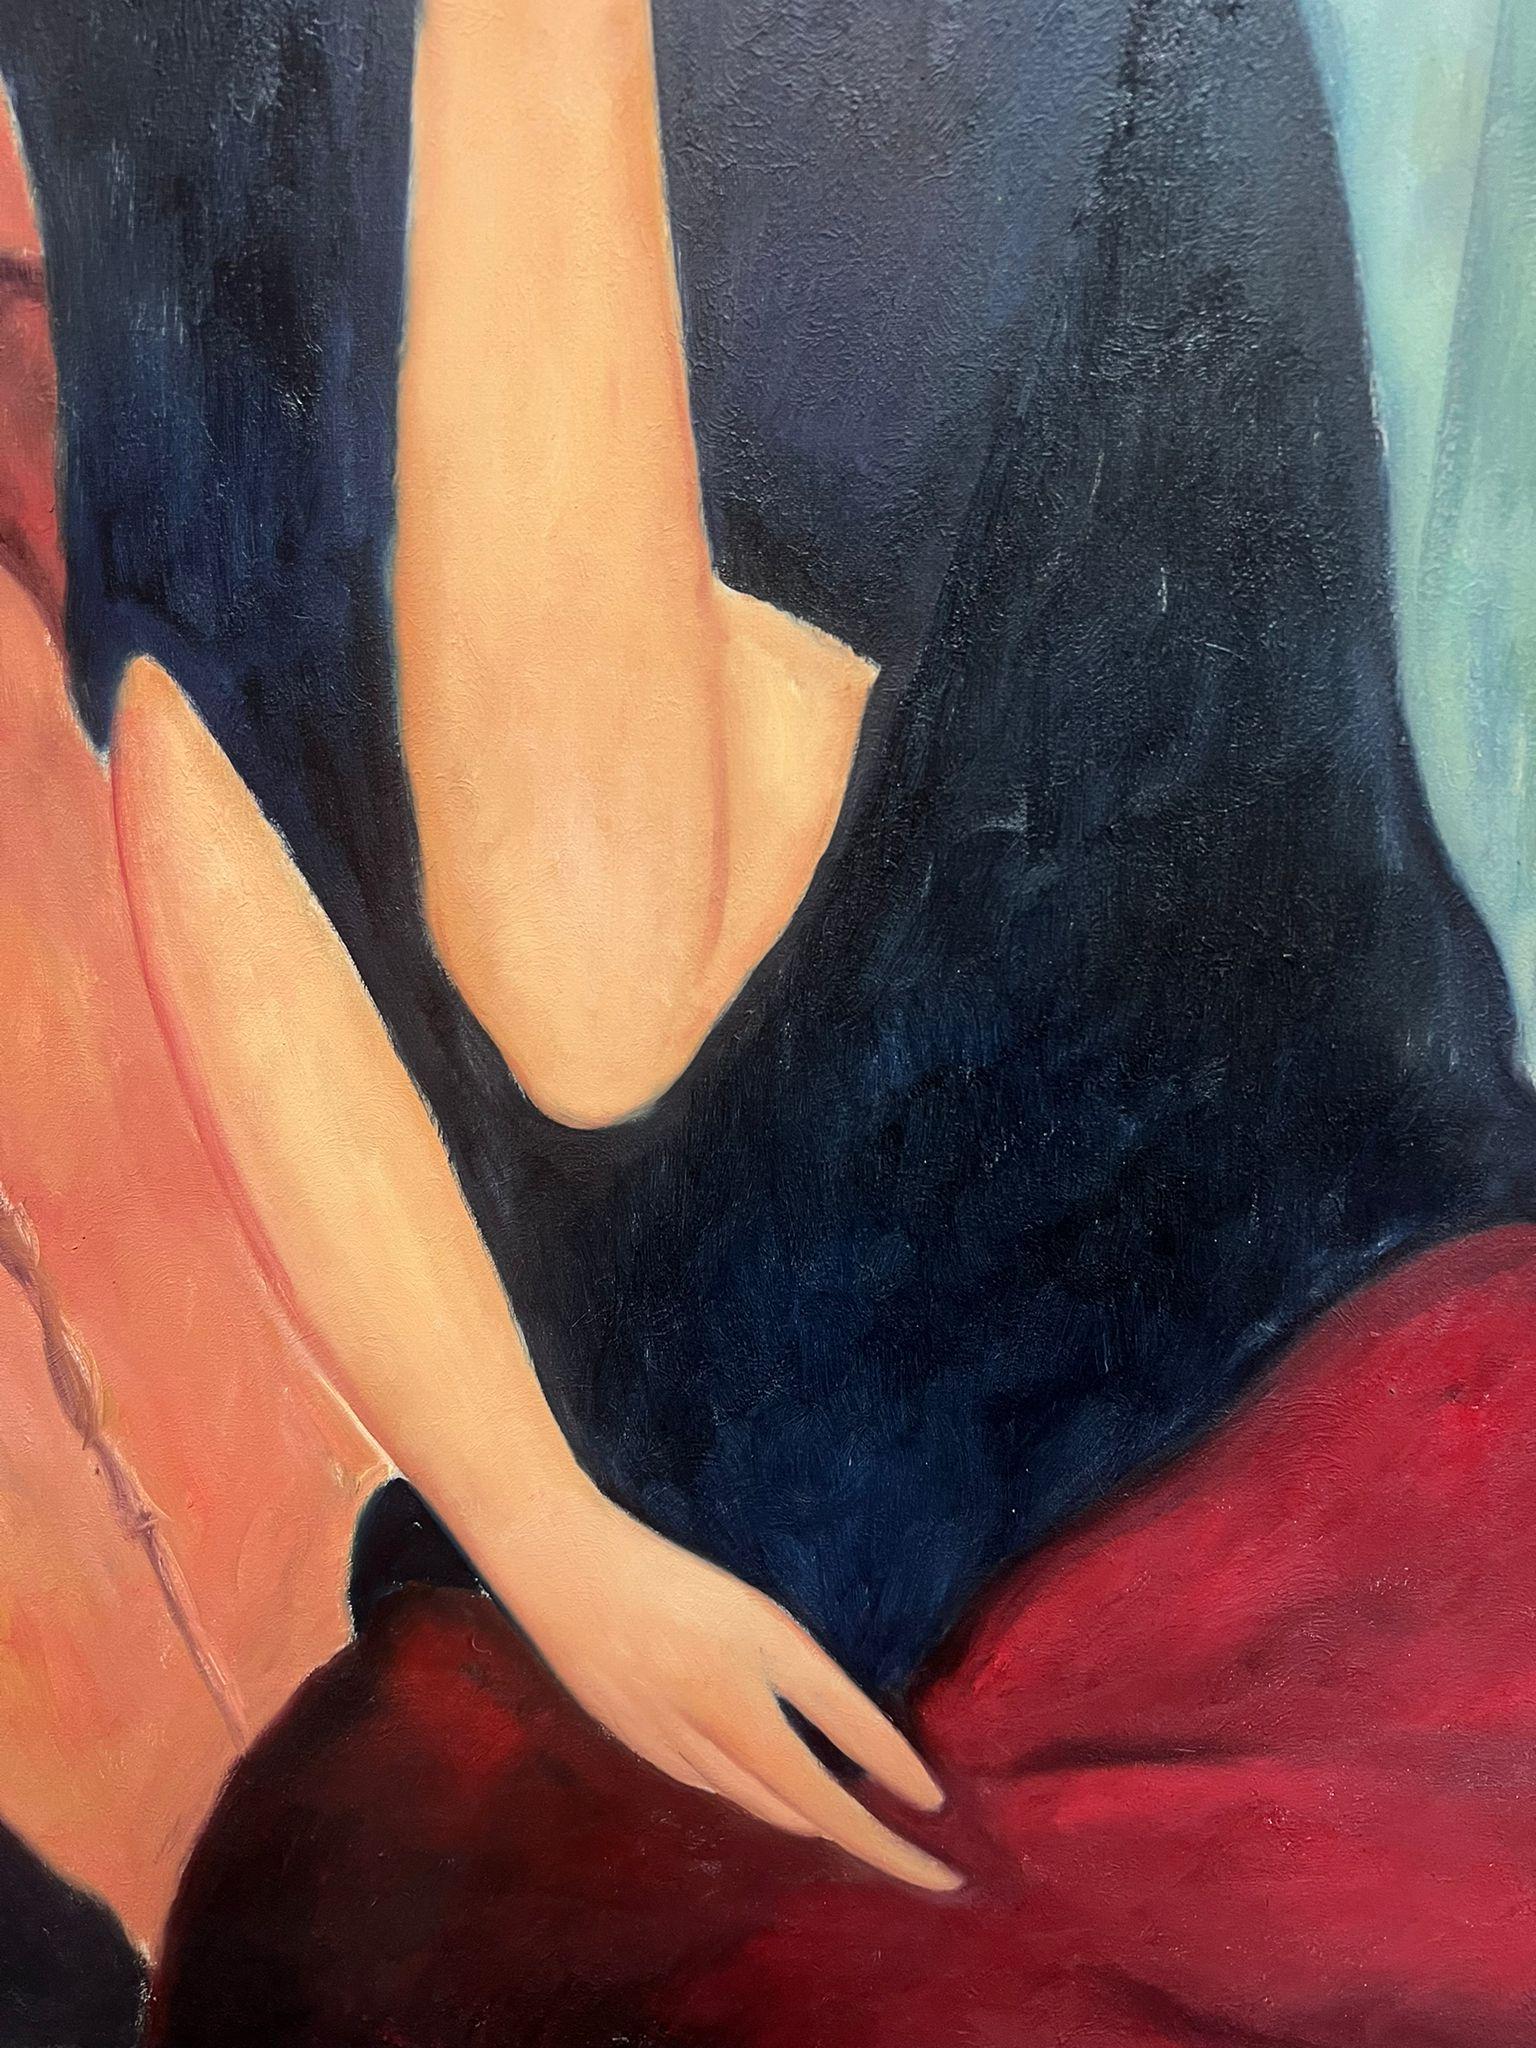 Porträt einer Frau
nach Modigliani (siehe Details verso)
Öl auf Leinwand, ungerahmt
Leinwand: 36 x 24 Zoll
Provenienz: Privatsammlung, England
Zustand: ein paar kleine Schrammen, aber insgesamt guter und gesunder Zustand 

Amedeo Modigliani war ein